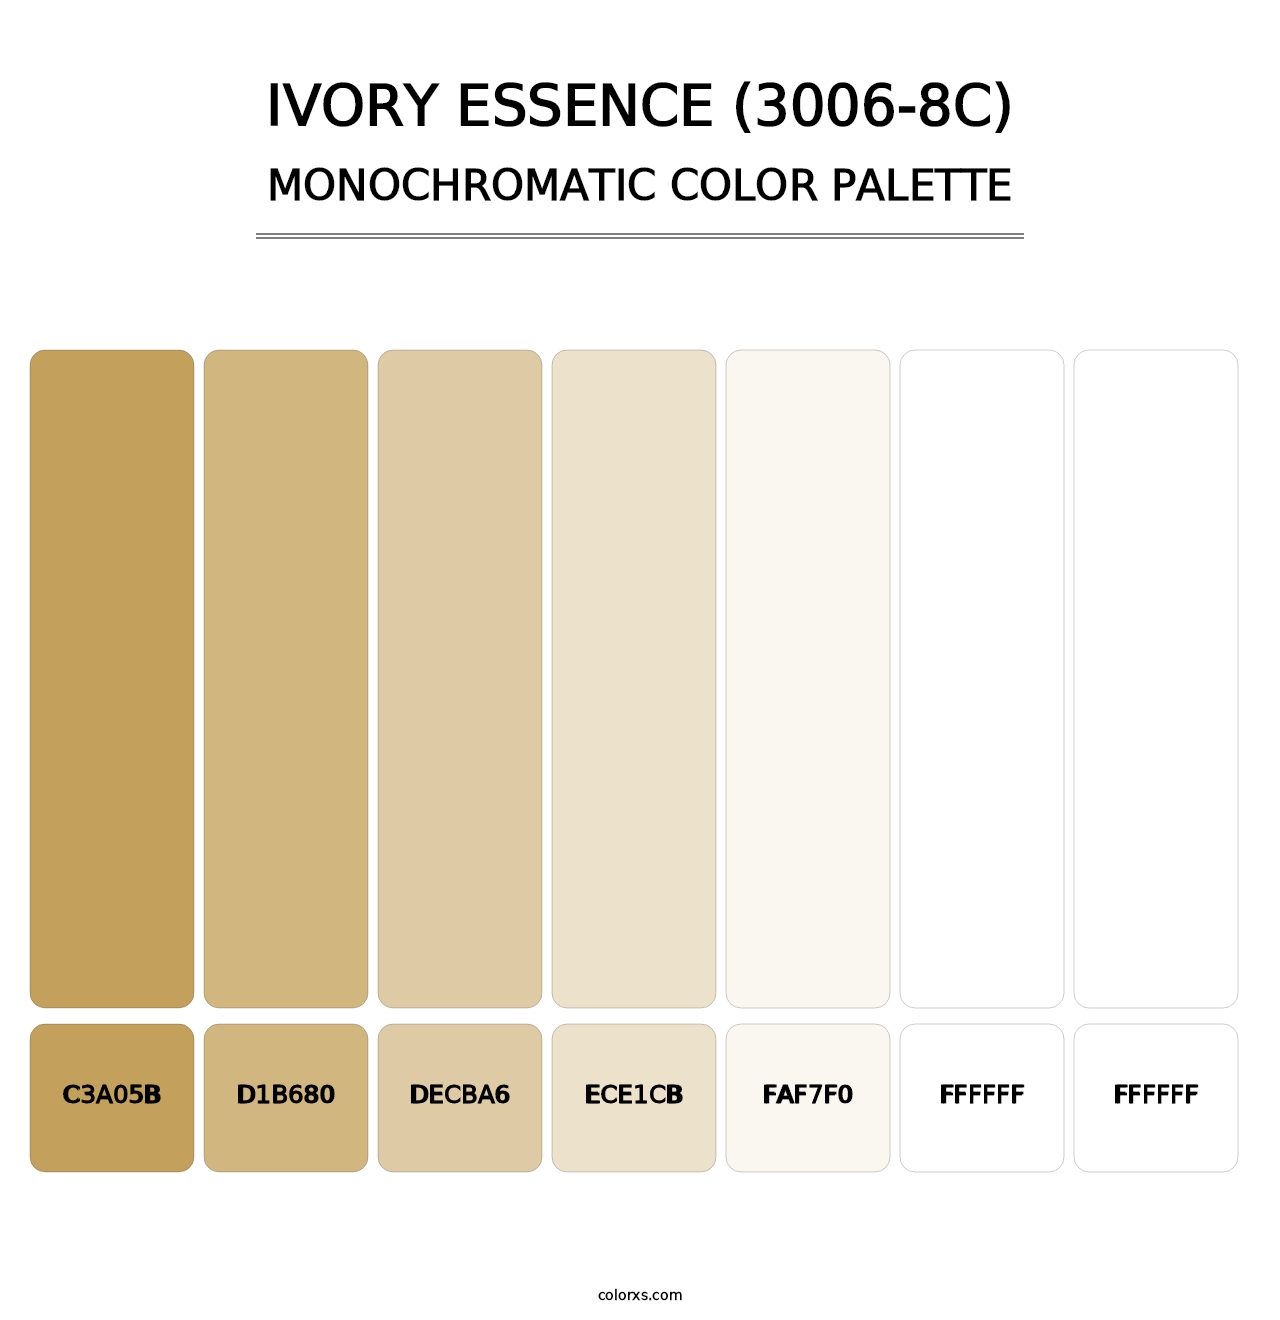 Ivory Essence (3006-8C) - Monochromatic Color Palette